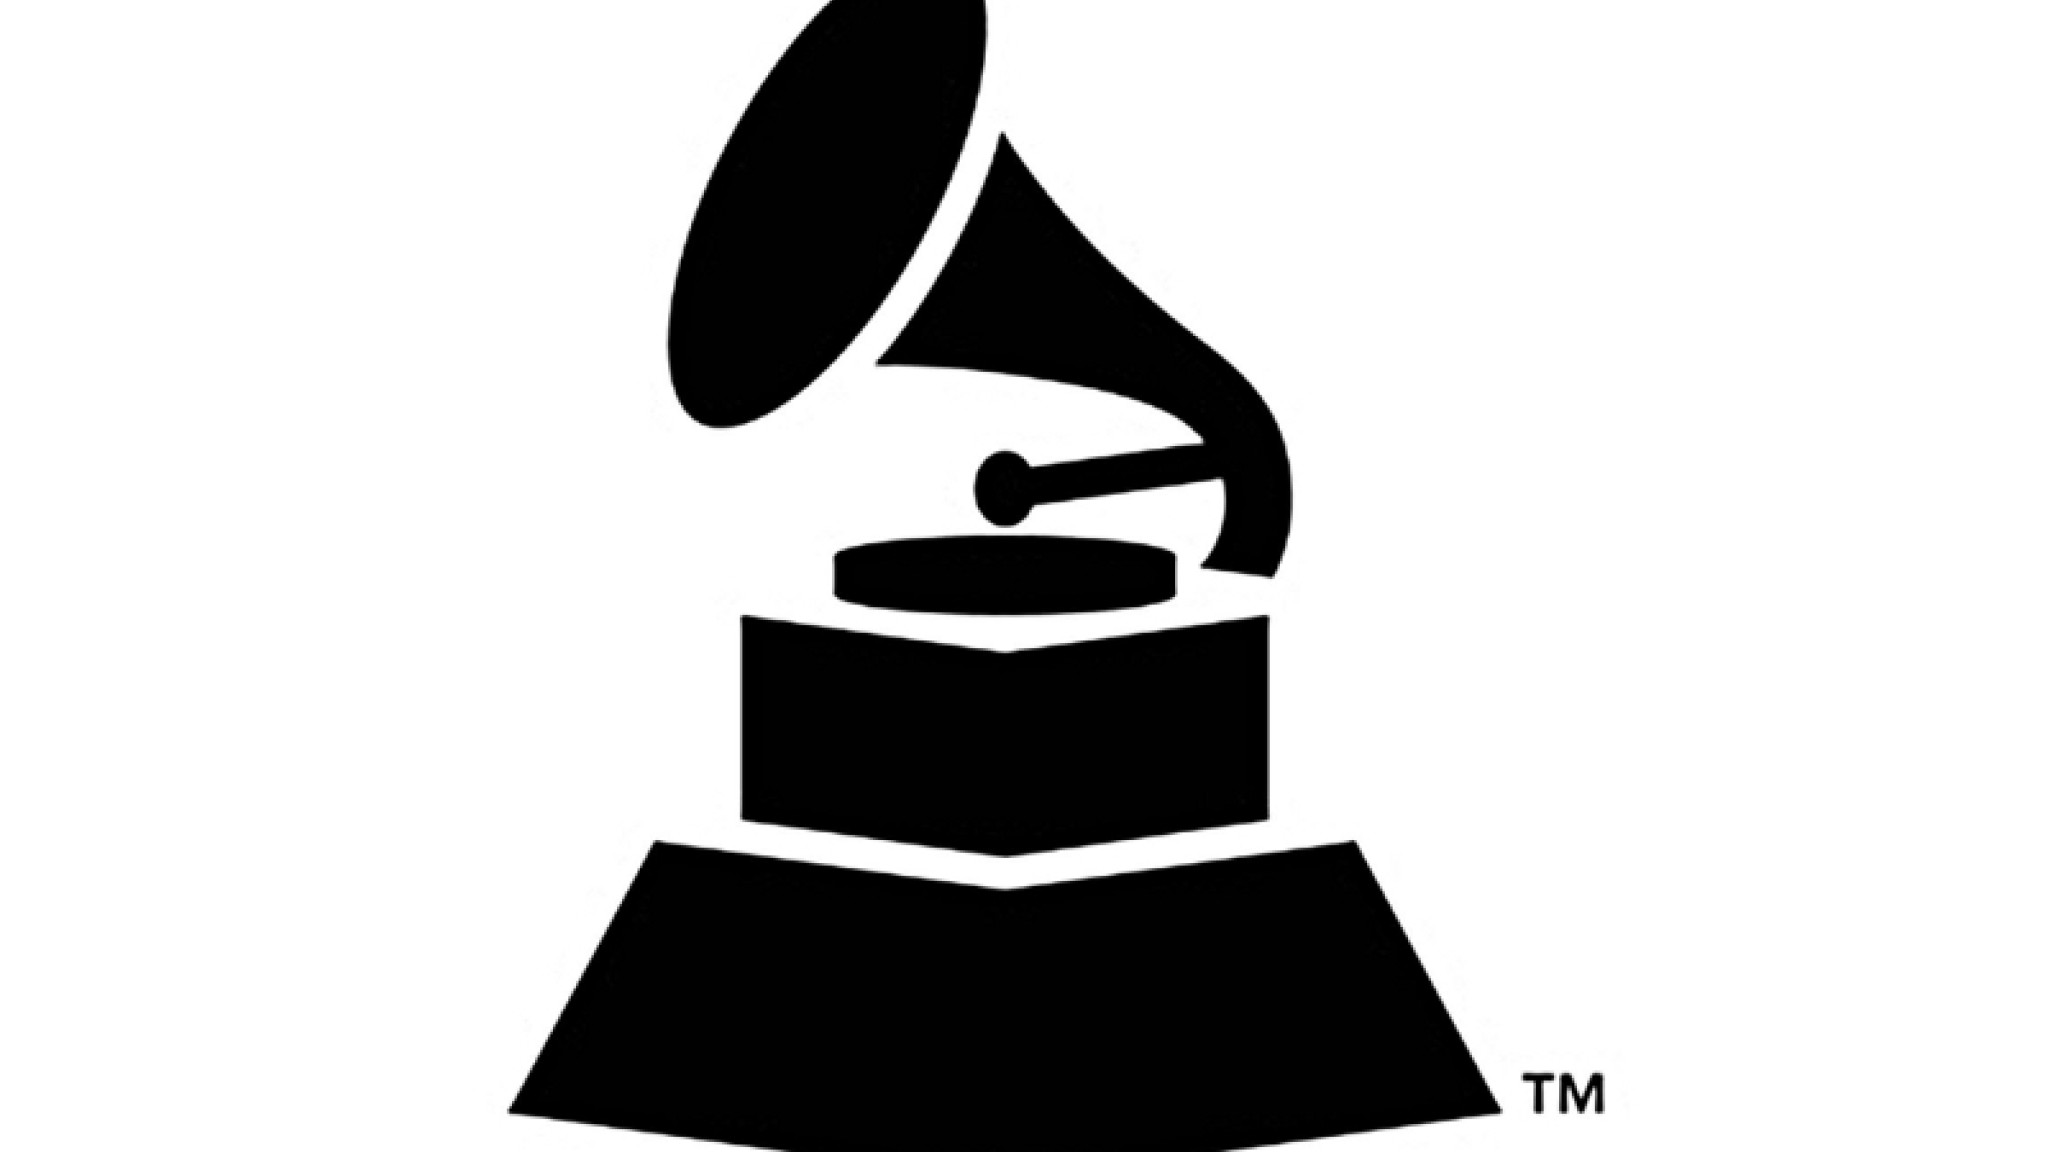 Frisch hereingesschneit: Die Grammy-Nominierungen für 2015